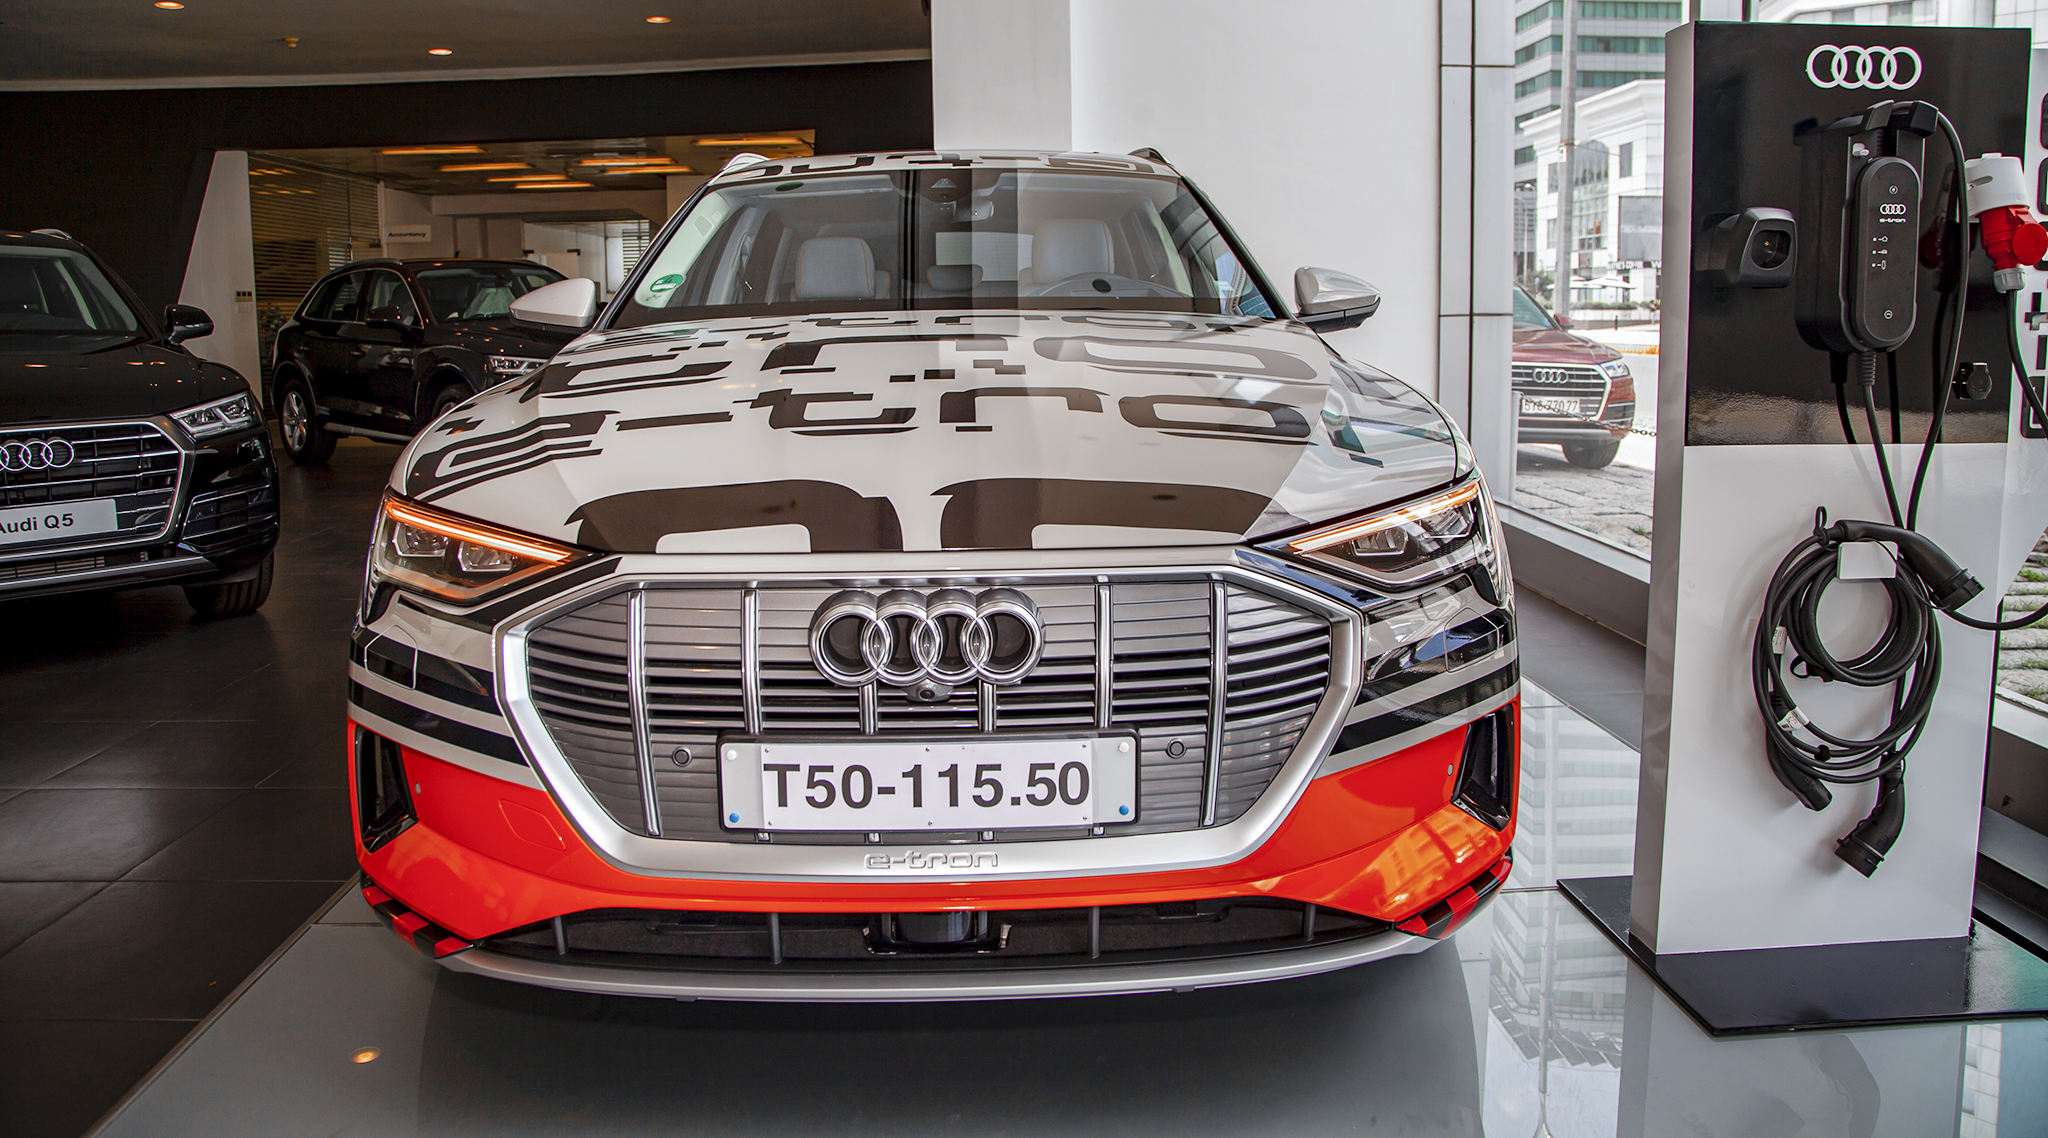 Chiêm ngưỡng xe Audi chạy hoàn toàn bằng điện tại Việt Nam